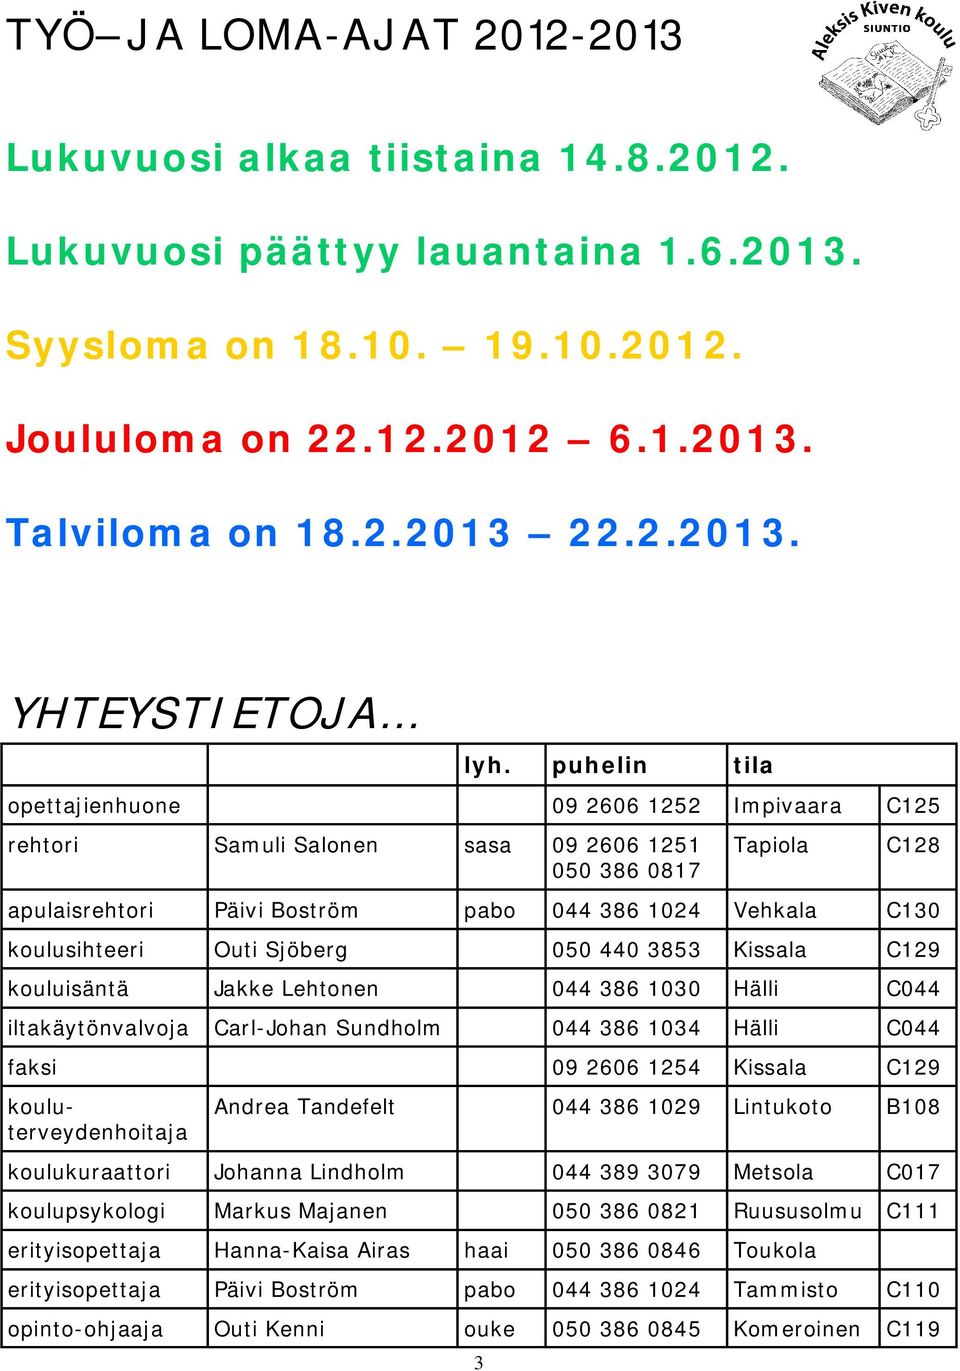 Syysloma on 18.10. 19.10.2012. Joululoma on 22.12.2012 6.1.2013.